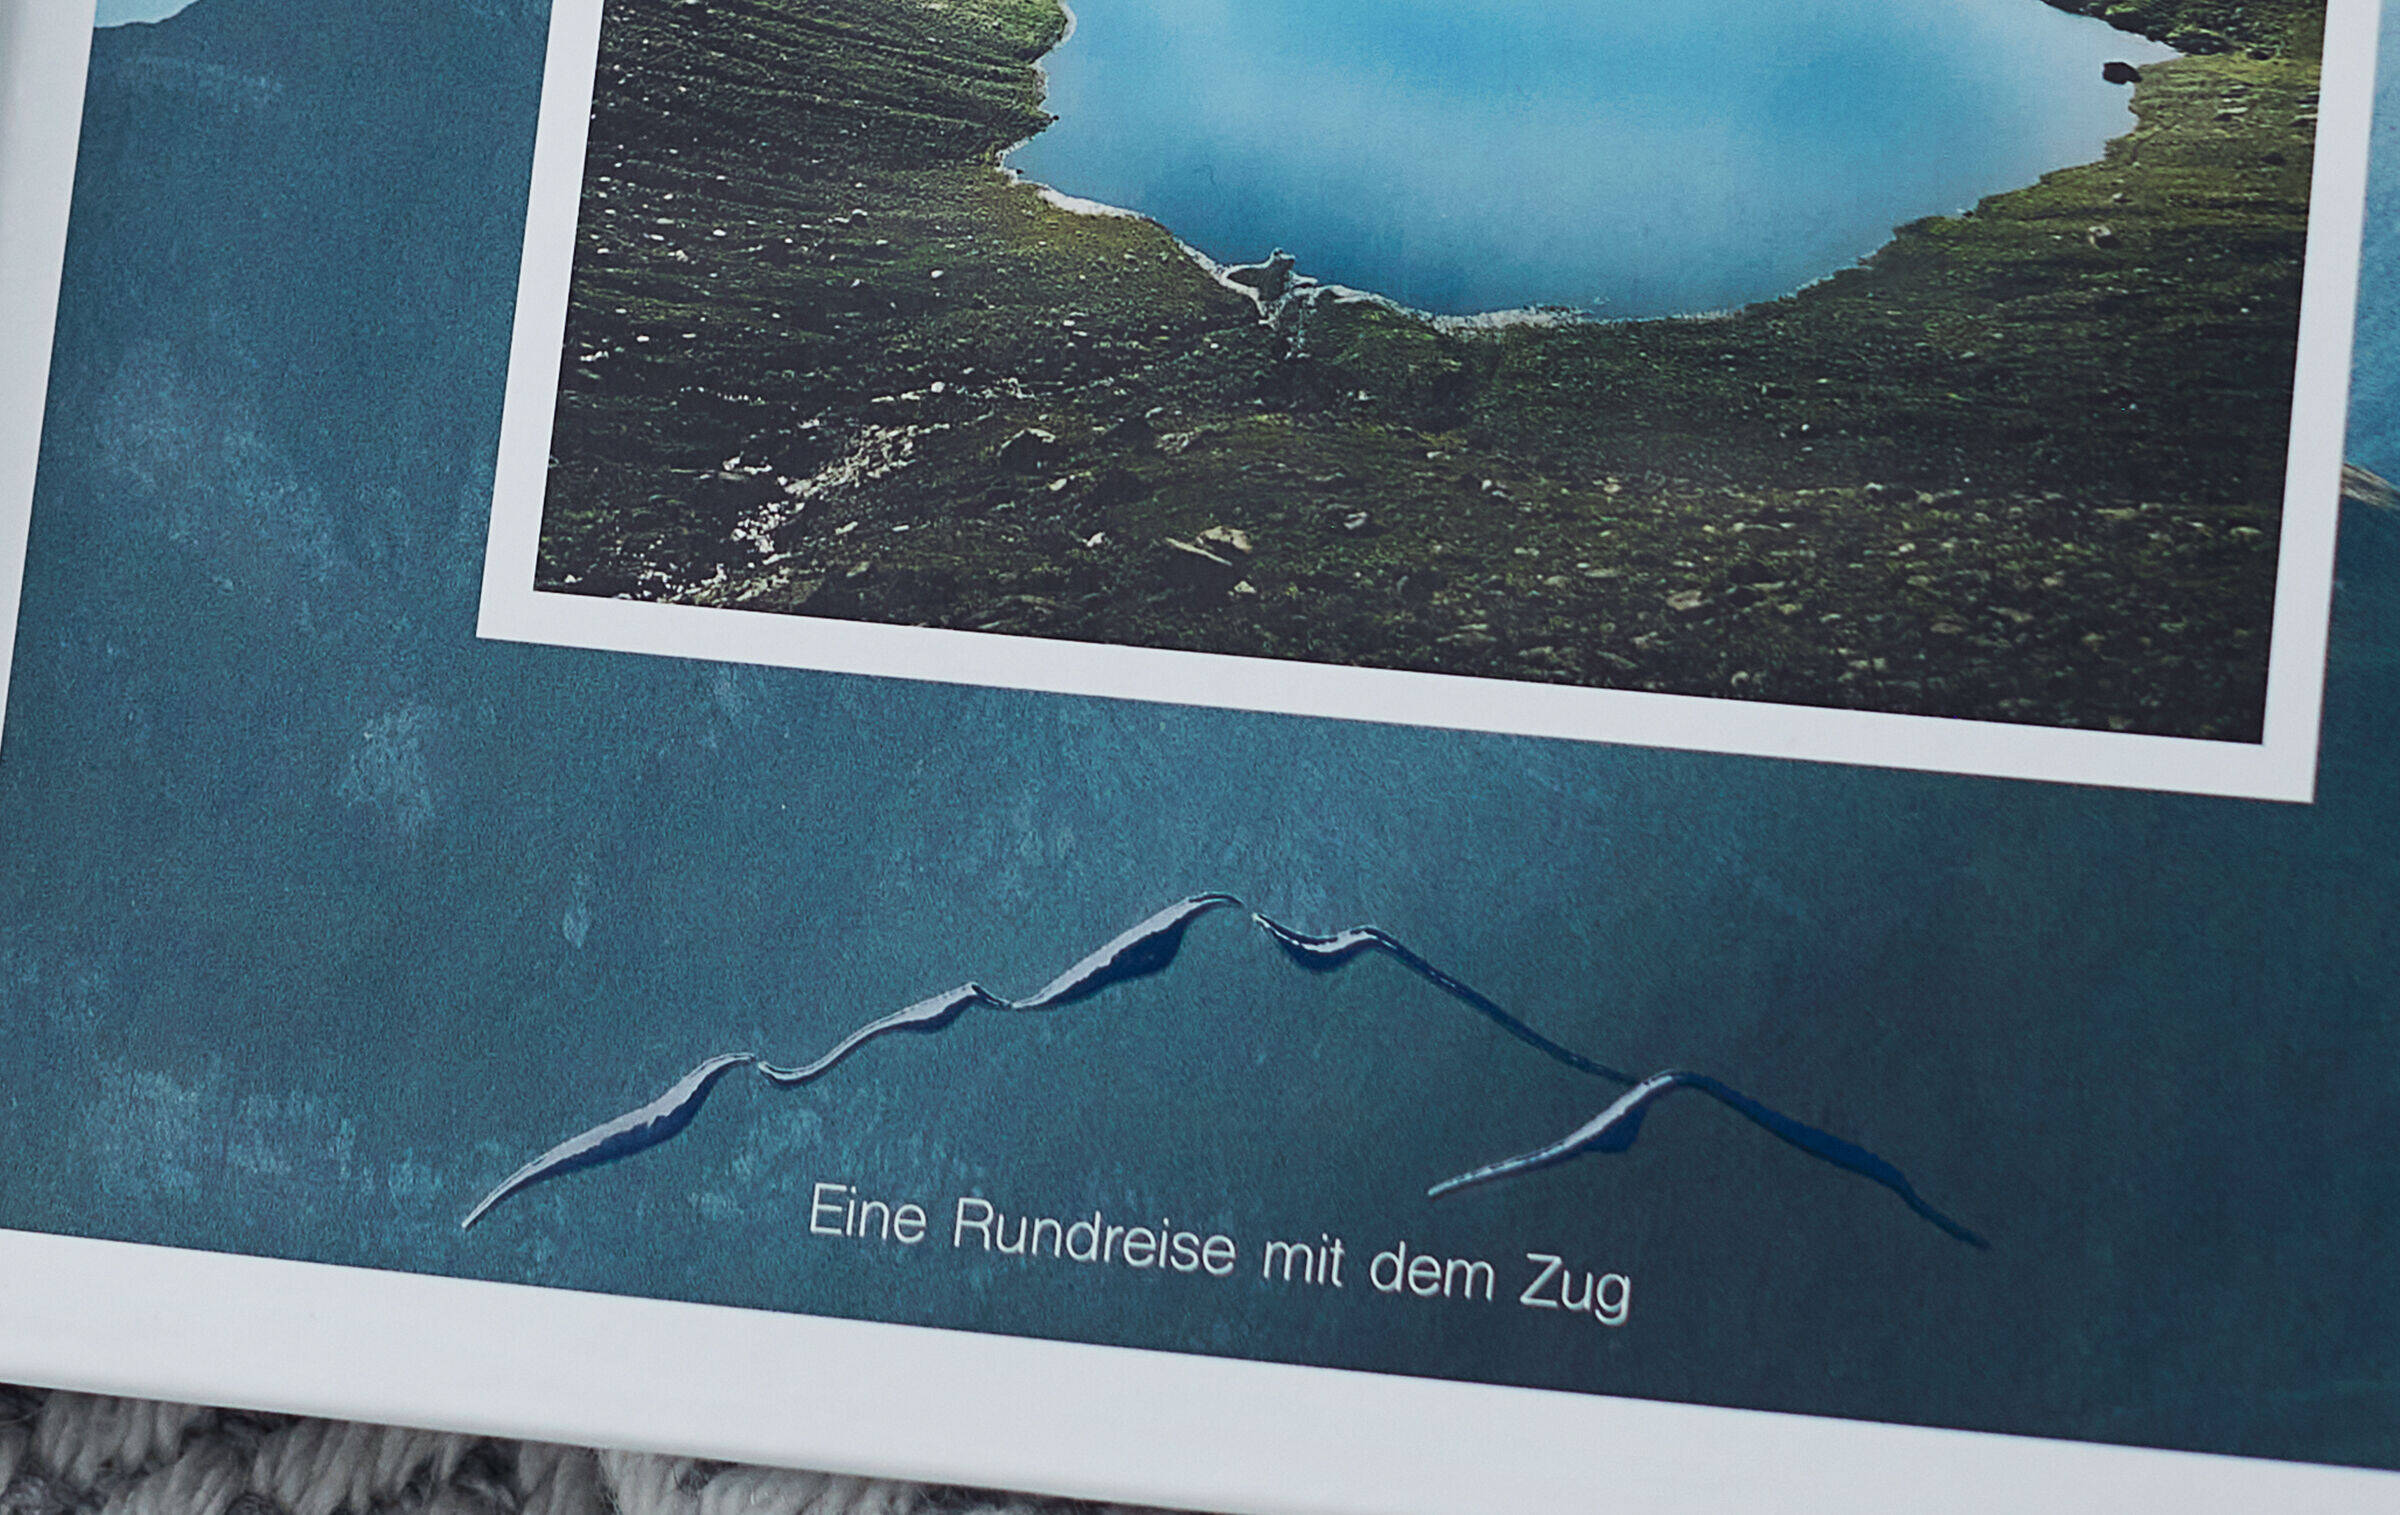 Zu sehen ist die Detailansicht einer schimmernden Clipart-Bergkontur auf dem Einband des Fotobuchs. Die Textzeile darunter lautet: "Eine Rundreise mit dem Zug".